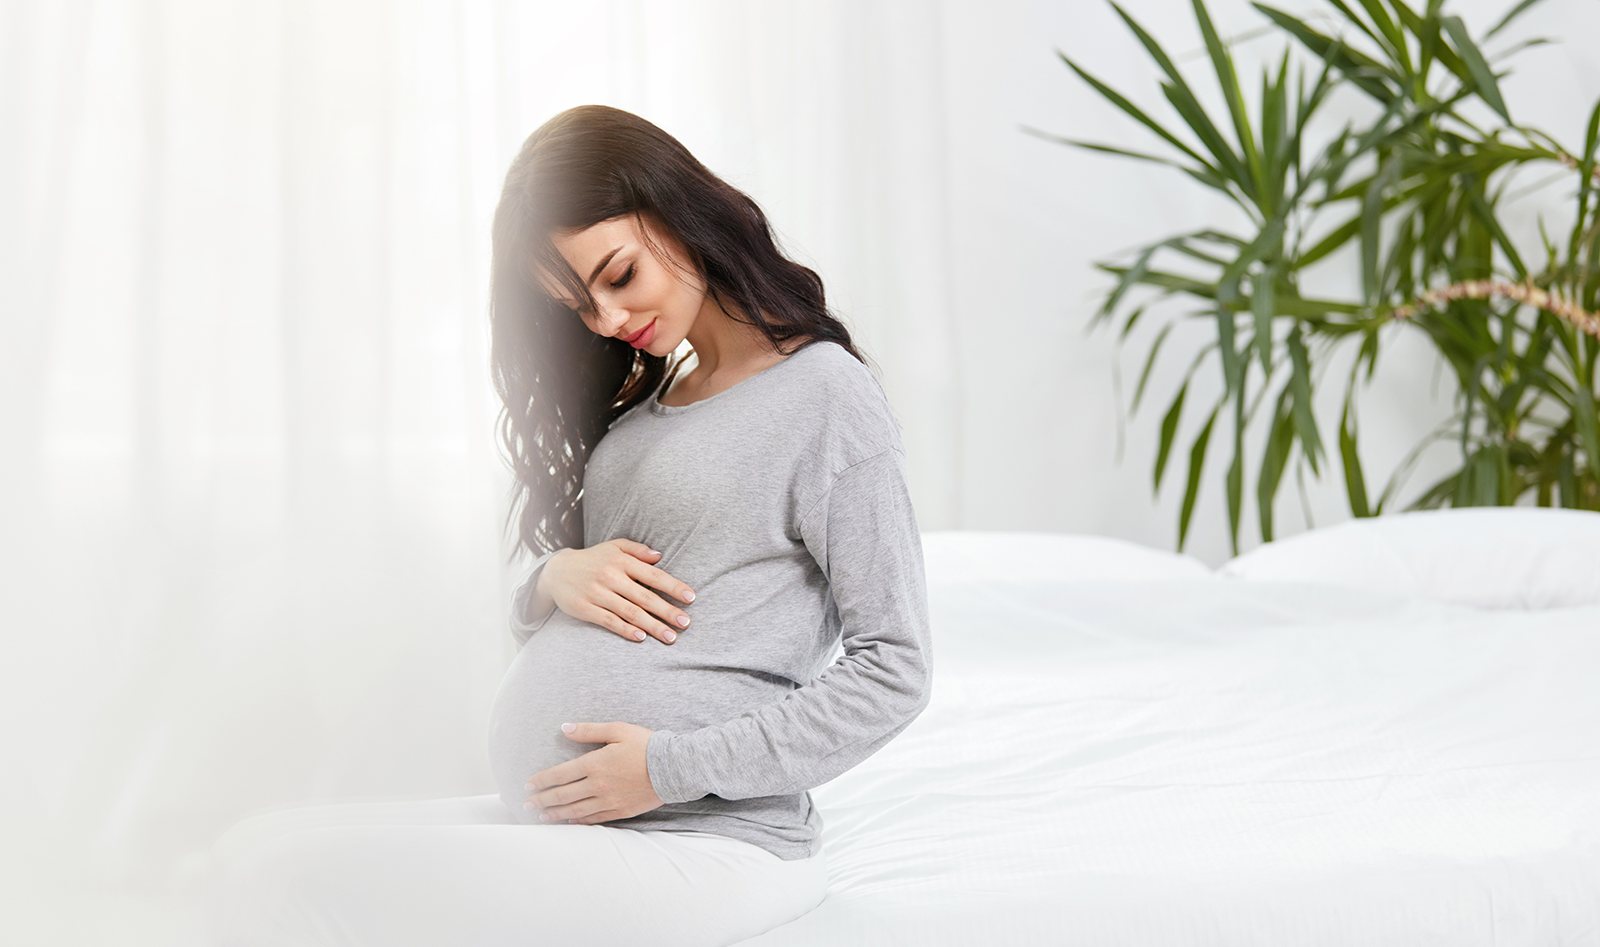 Узнавай все о тридцать третьей неделе беременности на сайте Nutricia club